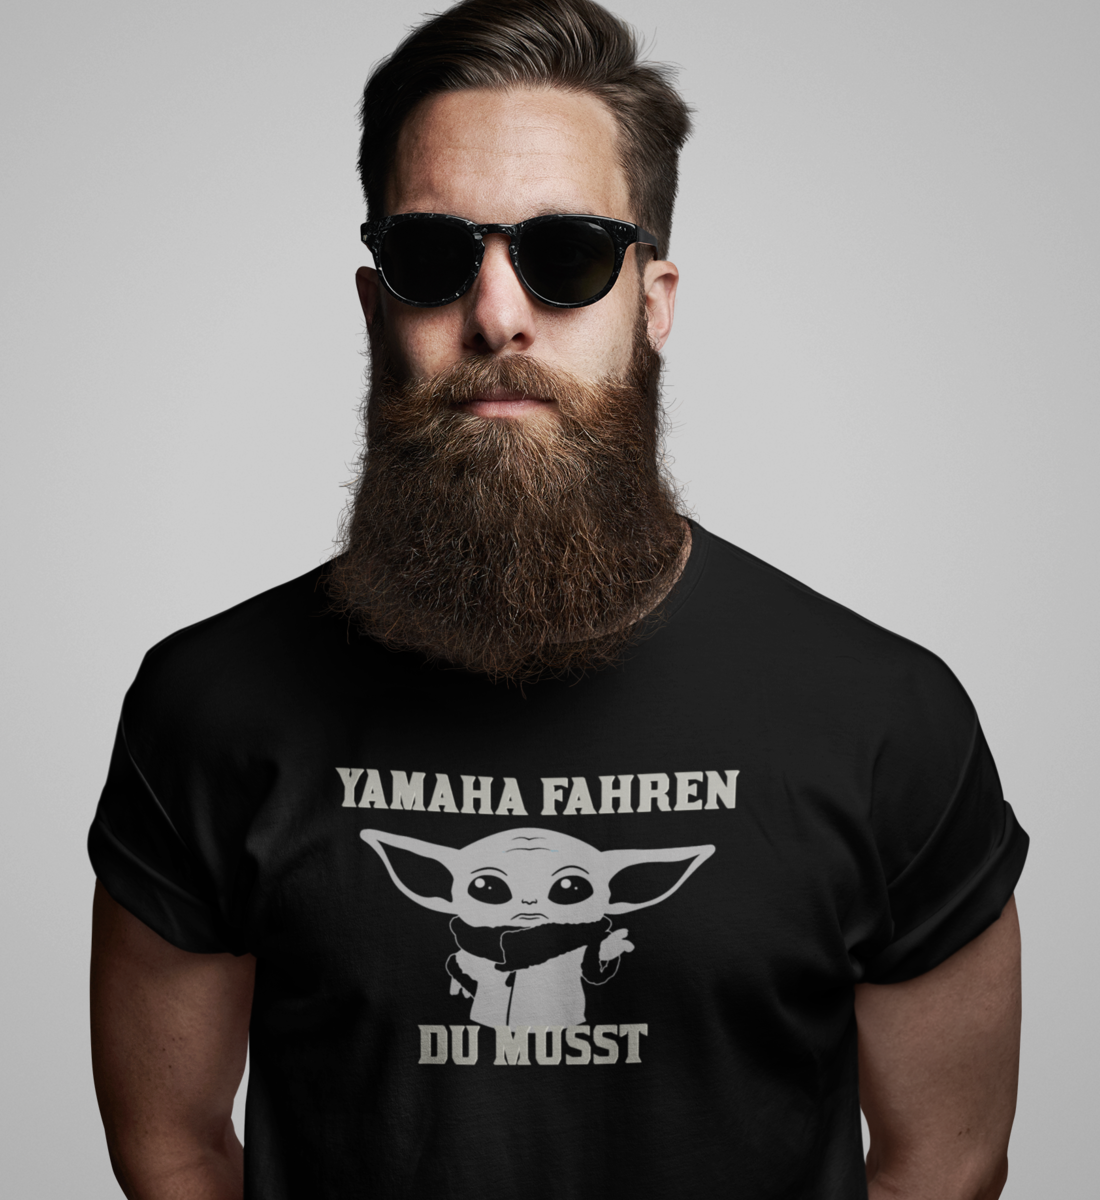 Yamaha fahren du musst - Herren T-Shirt